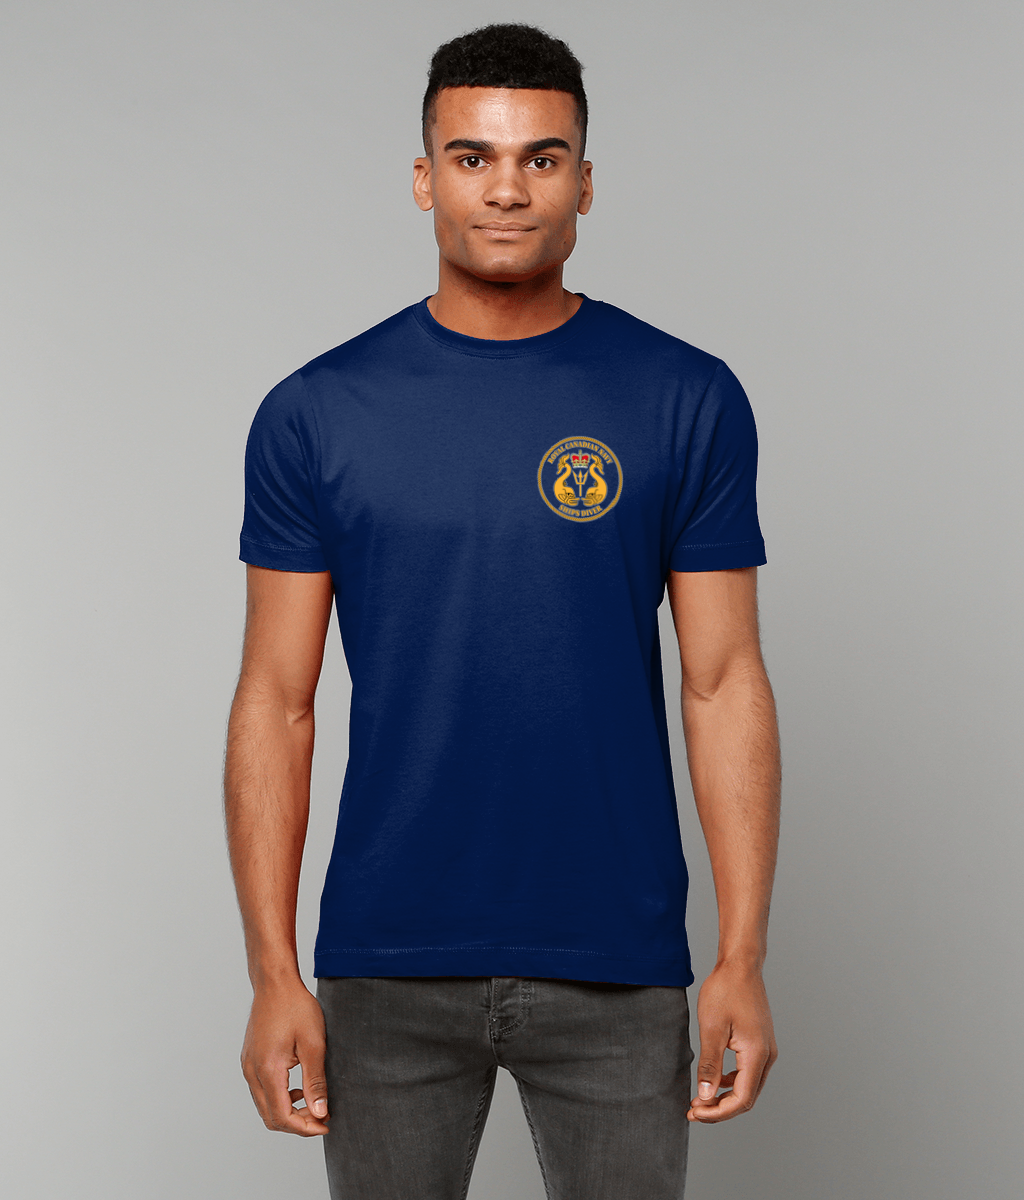 87 - Royal Canadian Navy Ships Diver - Printed T-Shirt